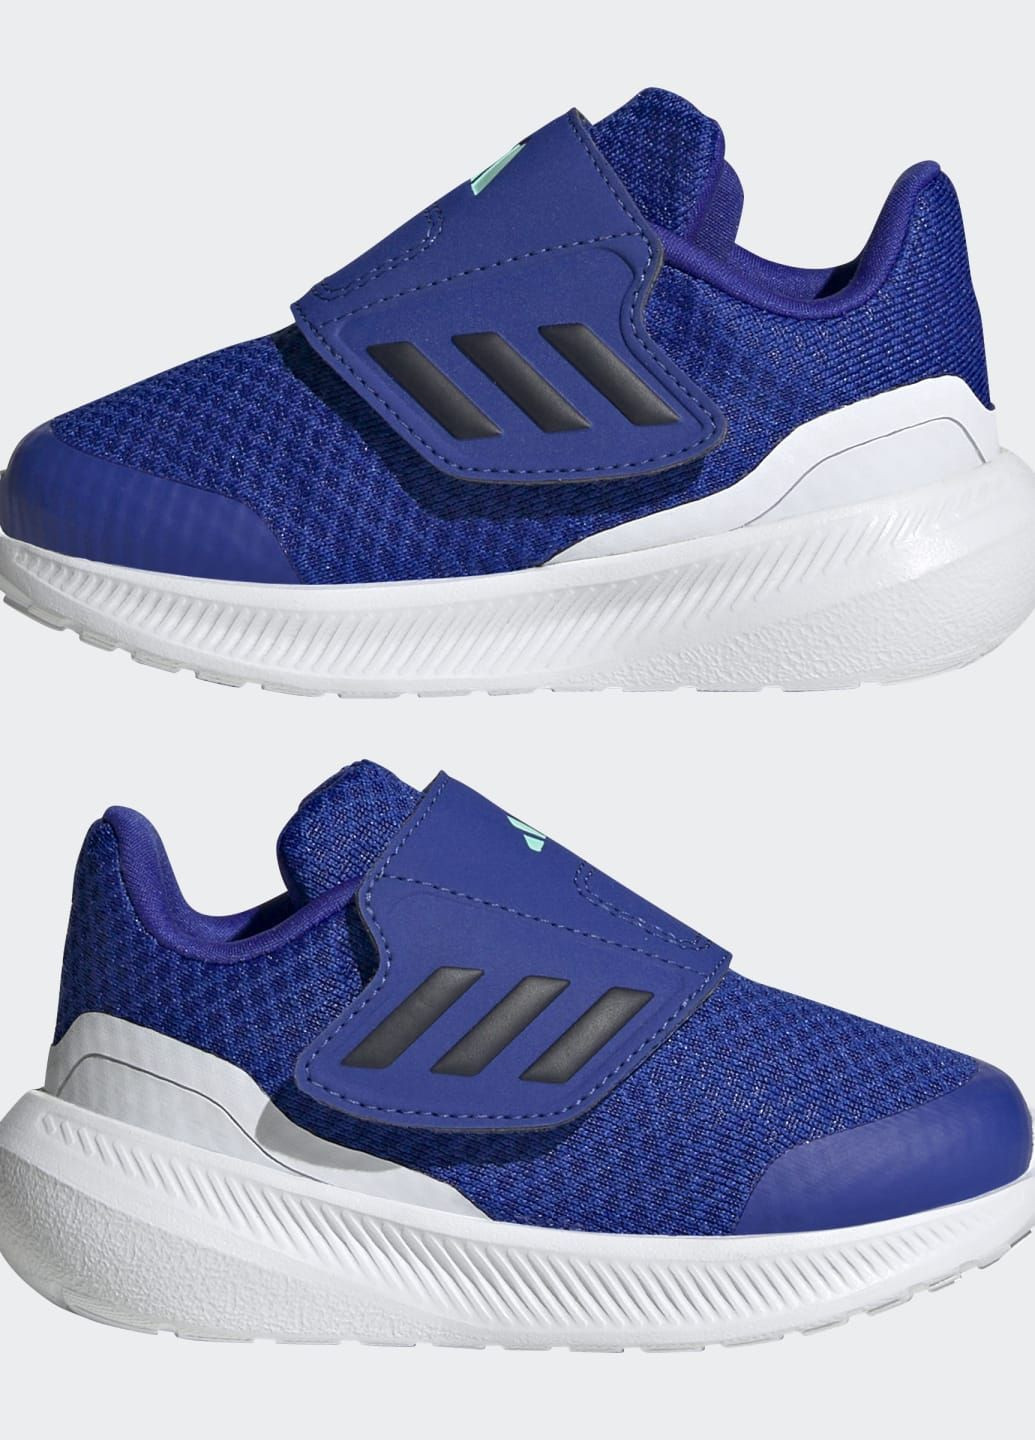 Синие всесезонные кроссовки runfalcon 3.0 adidas